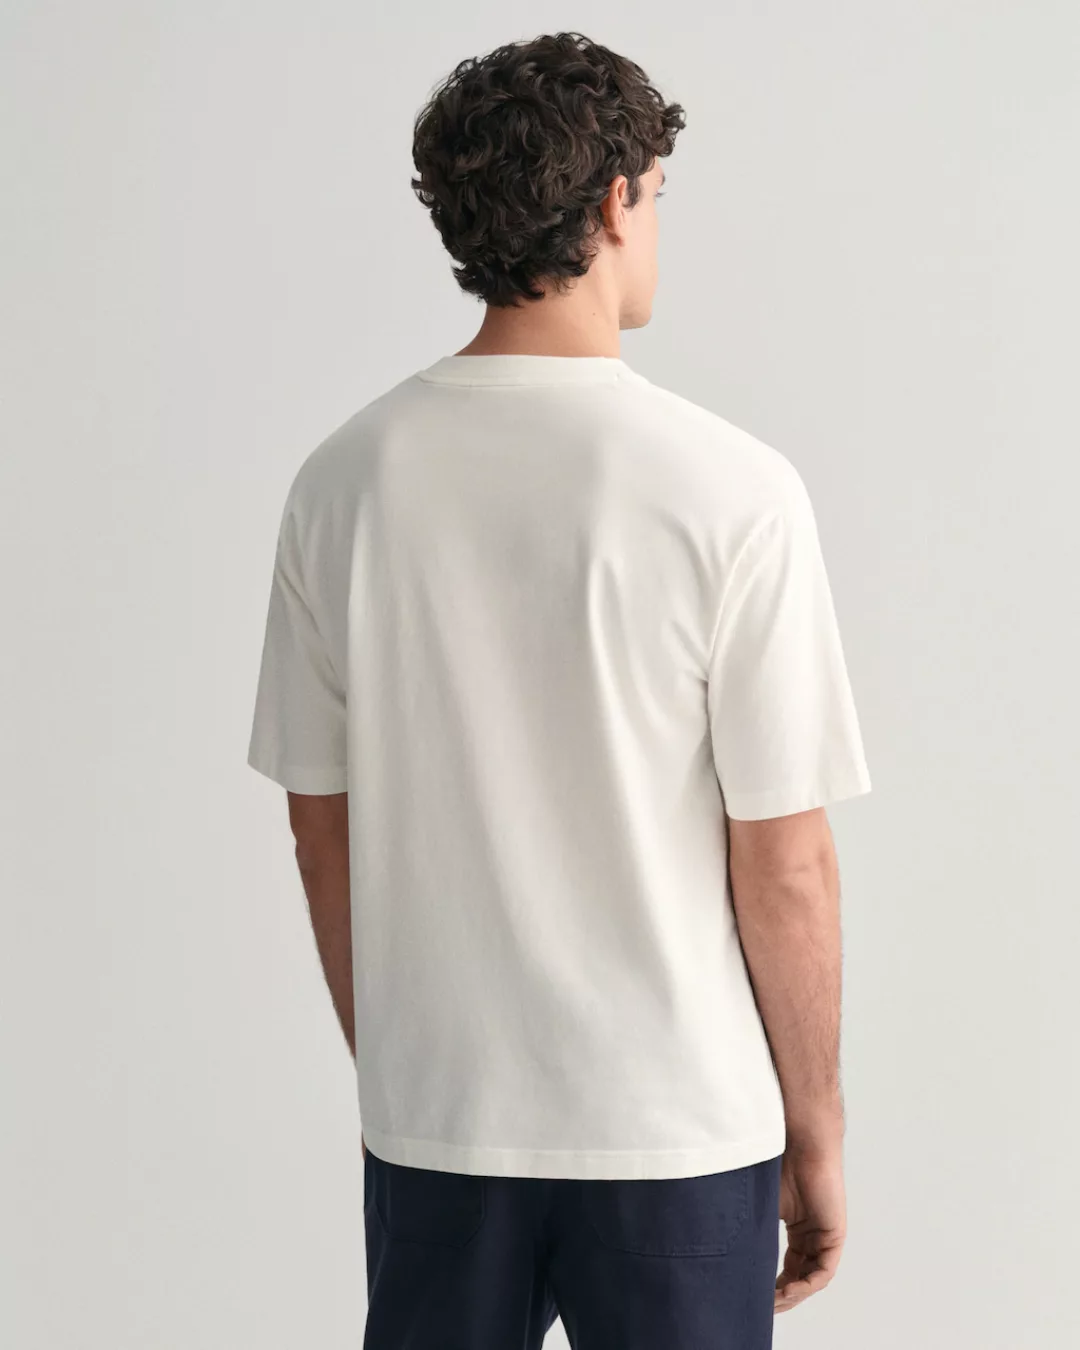 Gant T-Shirt GANT 1949 Graphic T-Shirt günstig online kaufen